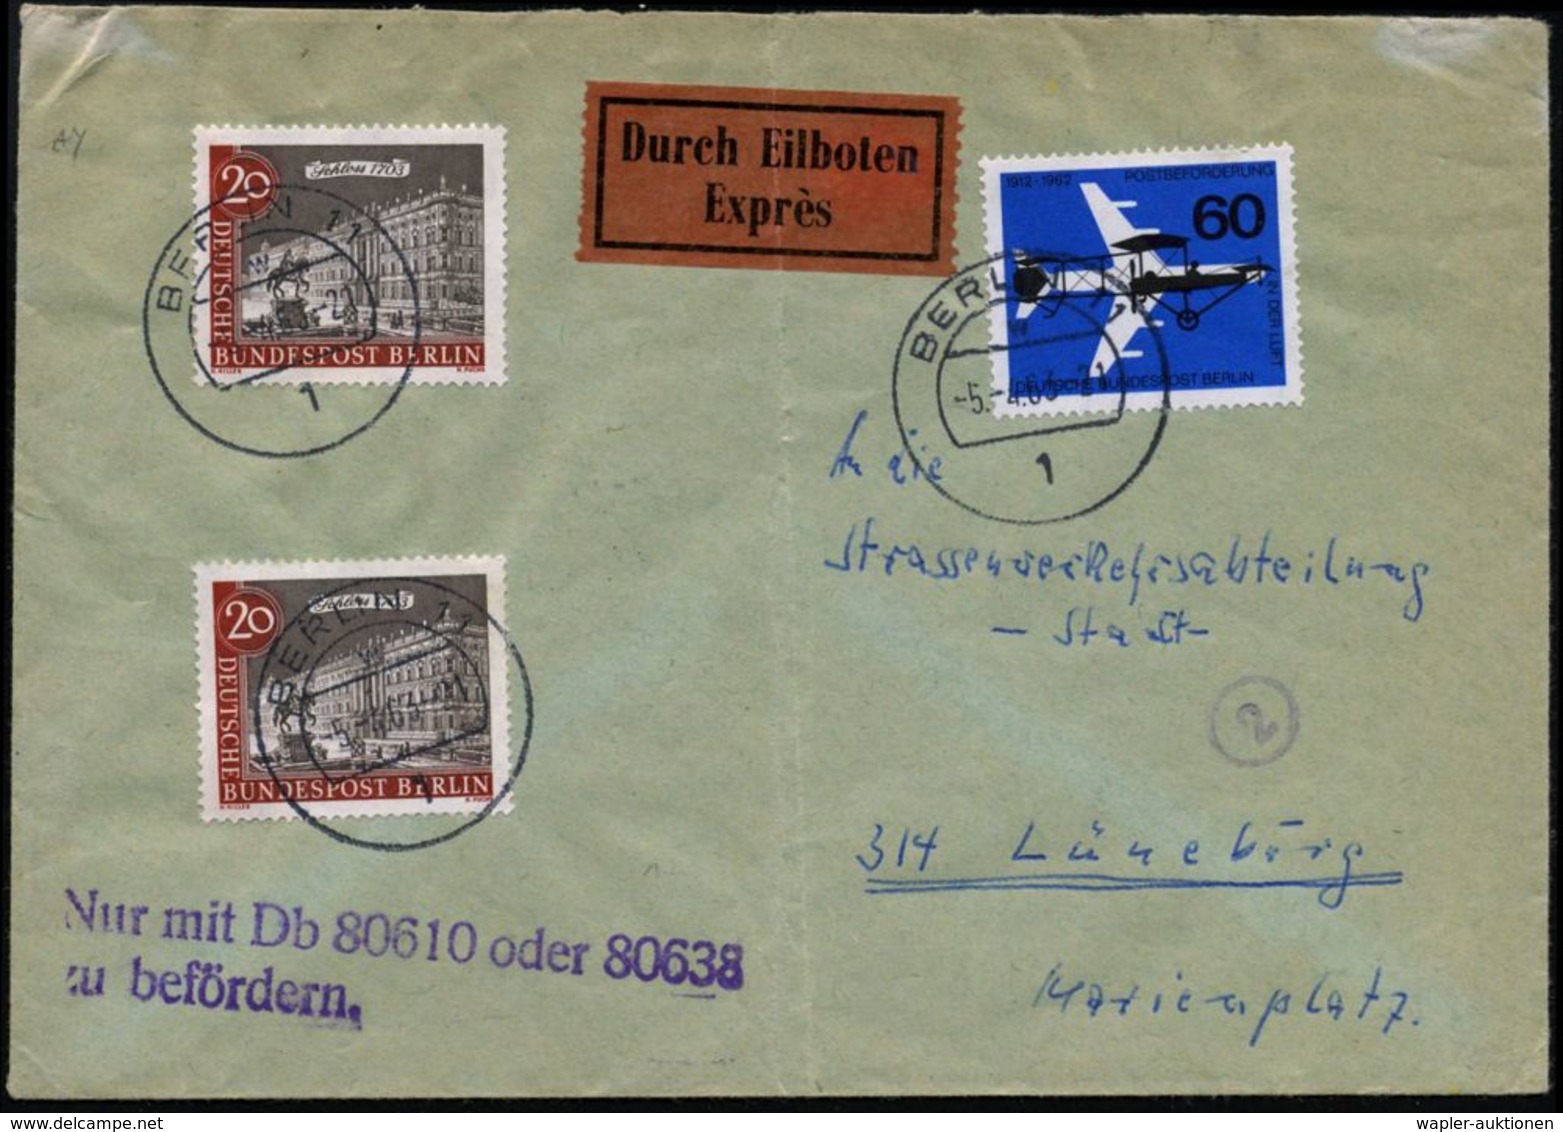 1 BERLIN 11/ W 1963 (5.4.) 1K + Amtl. Viol. 2L: Nur Mit Db 80610 Oder 80638/zu Befördern = Alliierter Dienstzug (um Zugr - Trains